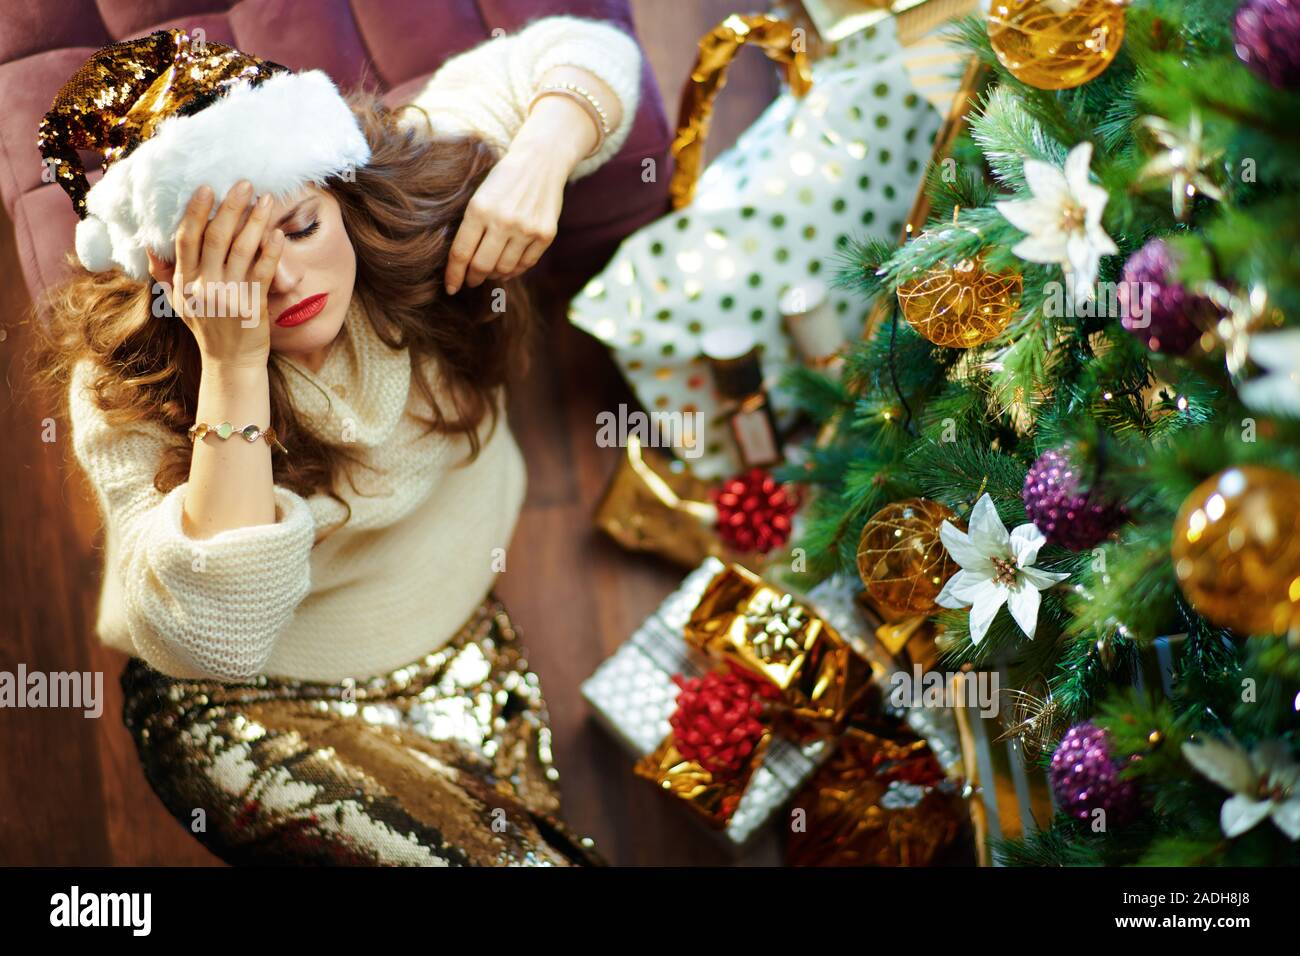 Albero Di Natale Zecchino Doro.Triste Albero Di Natale Immagini E Fotos Stock Alamy